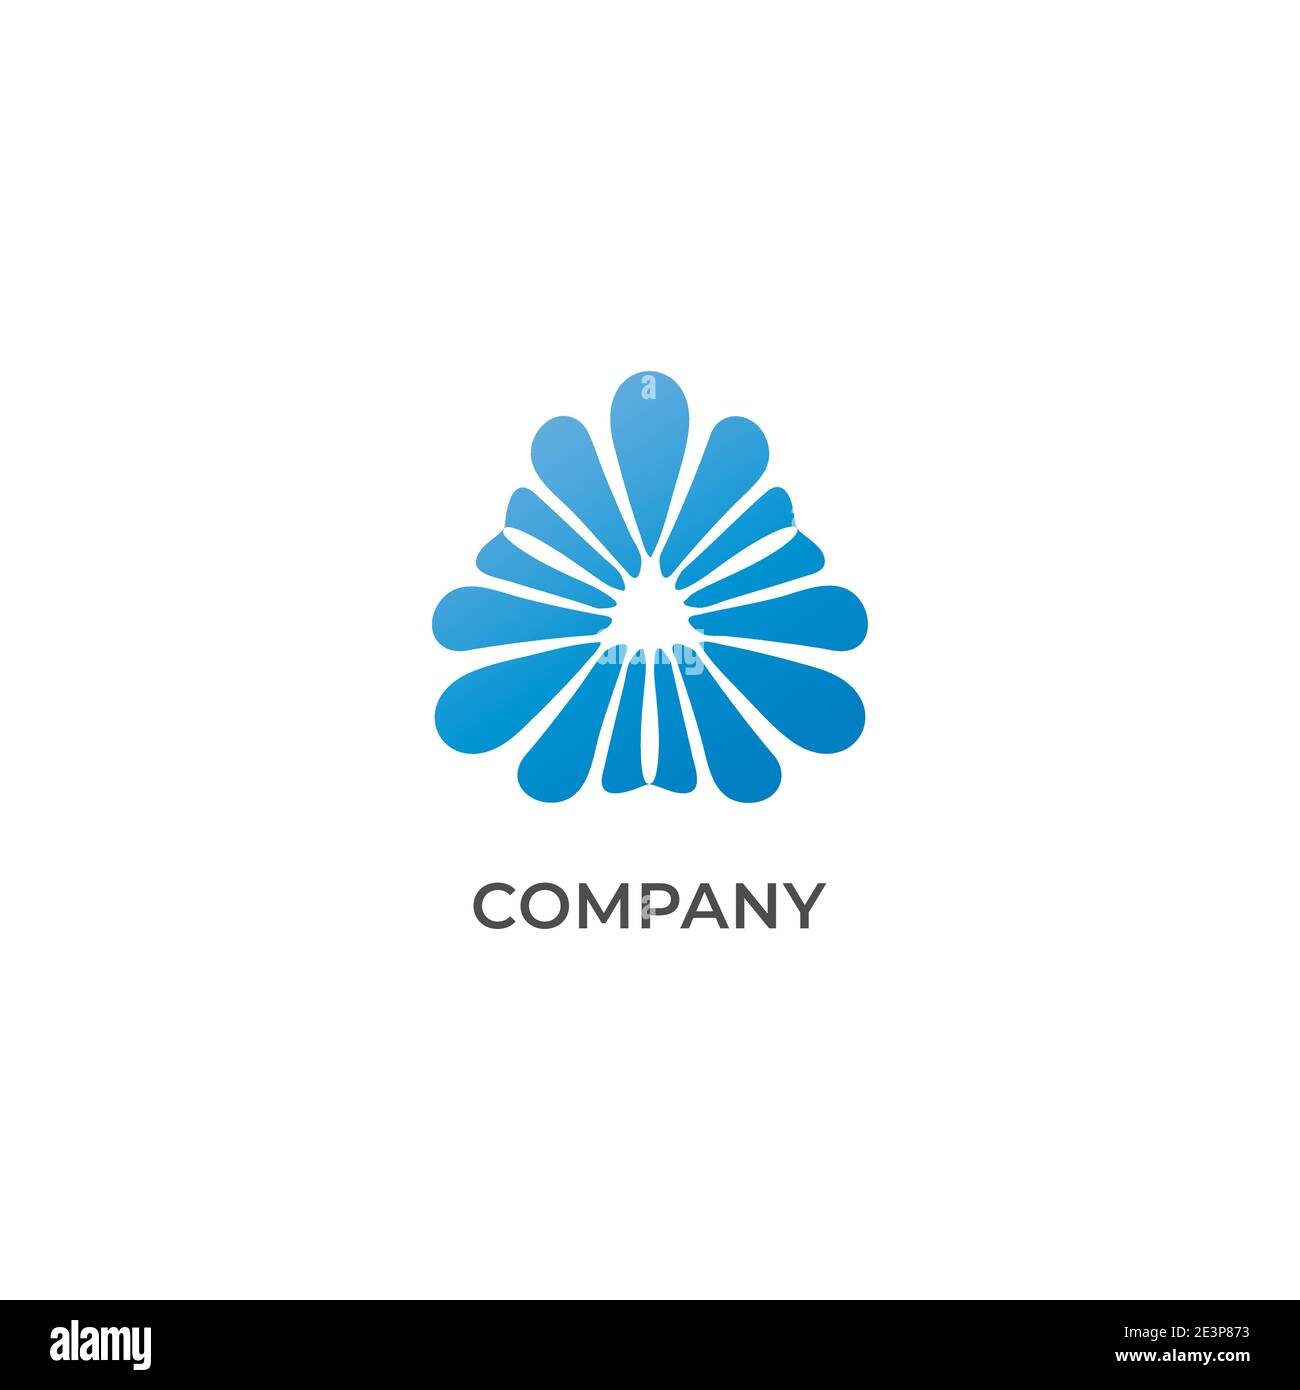 Abstrakte Wasser Blume Logo Design-Vorlage isoliert auf weißem Hintergrund. Docrative Wirbel mit hellblauer Farbe. Stock Vektor